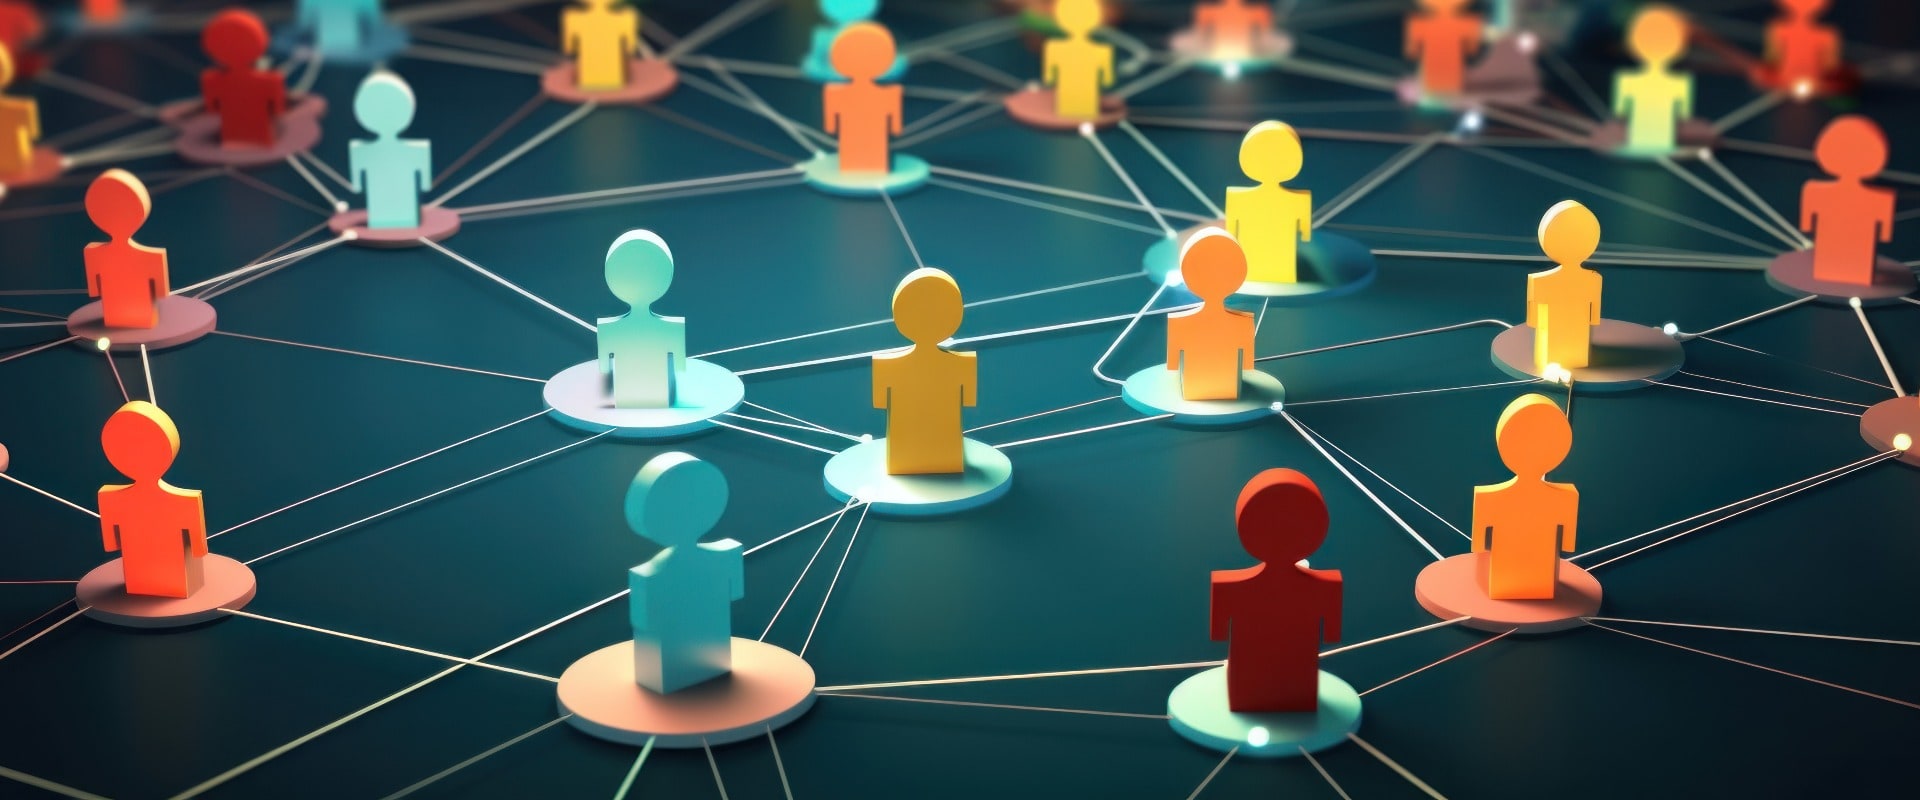 Concept de réseau social professionnel, connections entre personnes